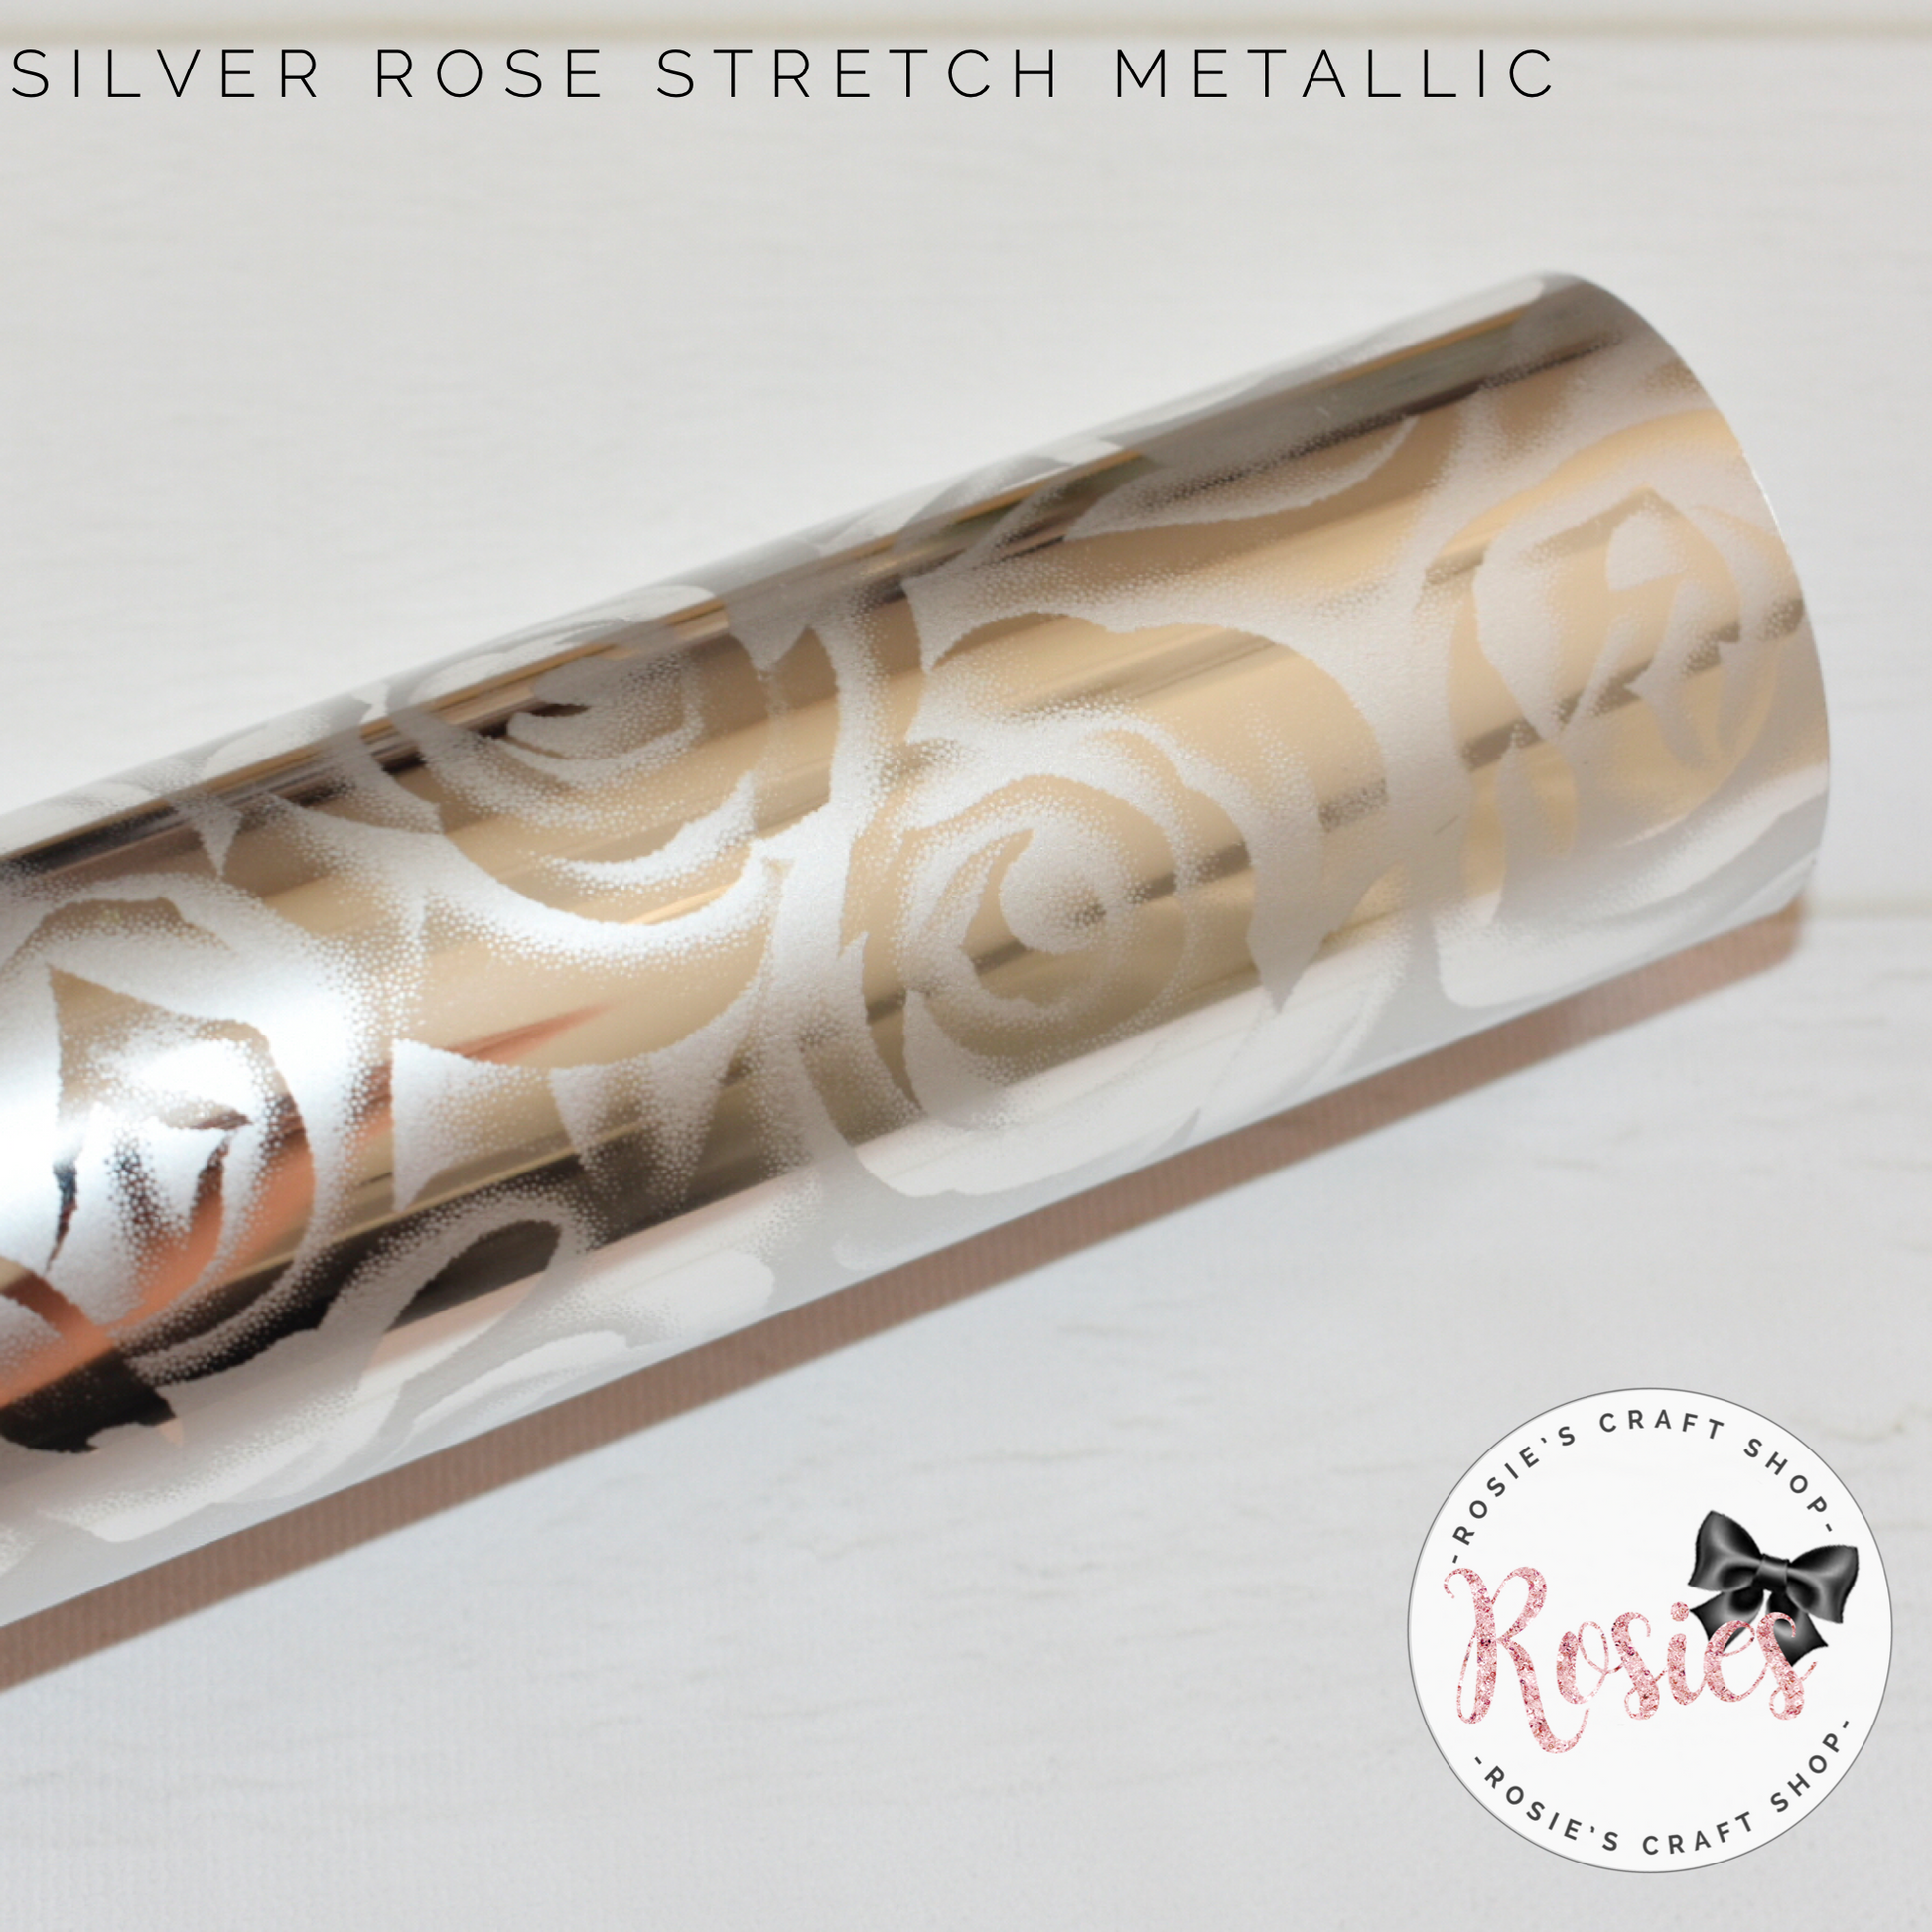 Silver Rose Metallic Stretch Iron On Vinyl HTV - Rosie's Craft Shop Ltd